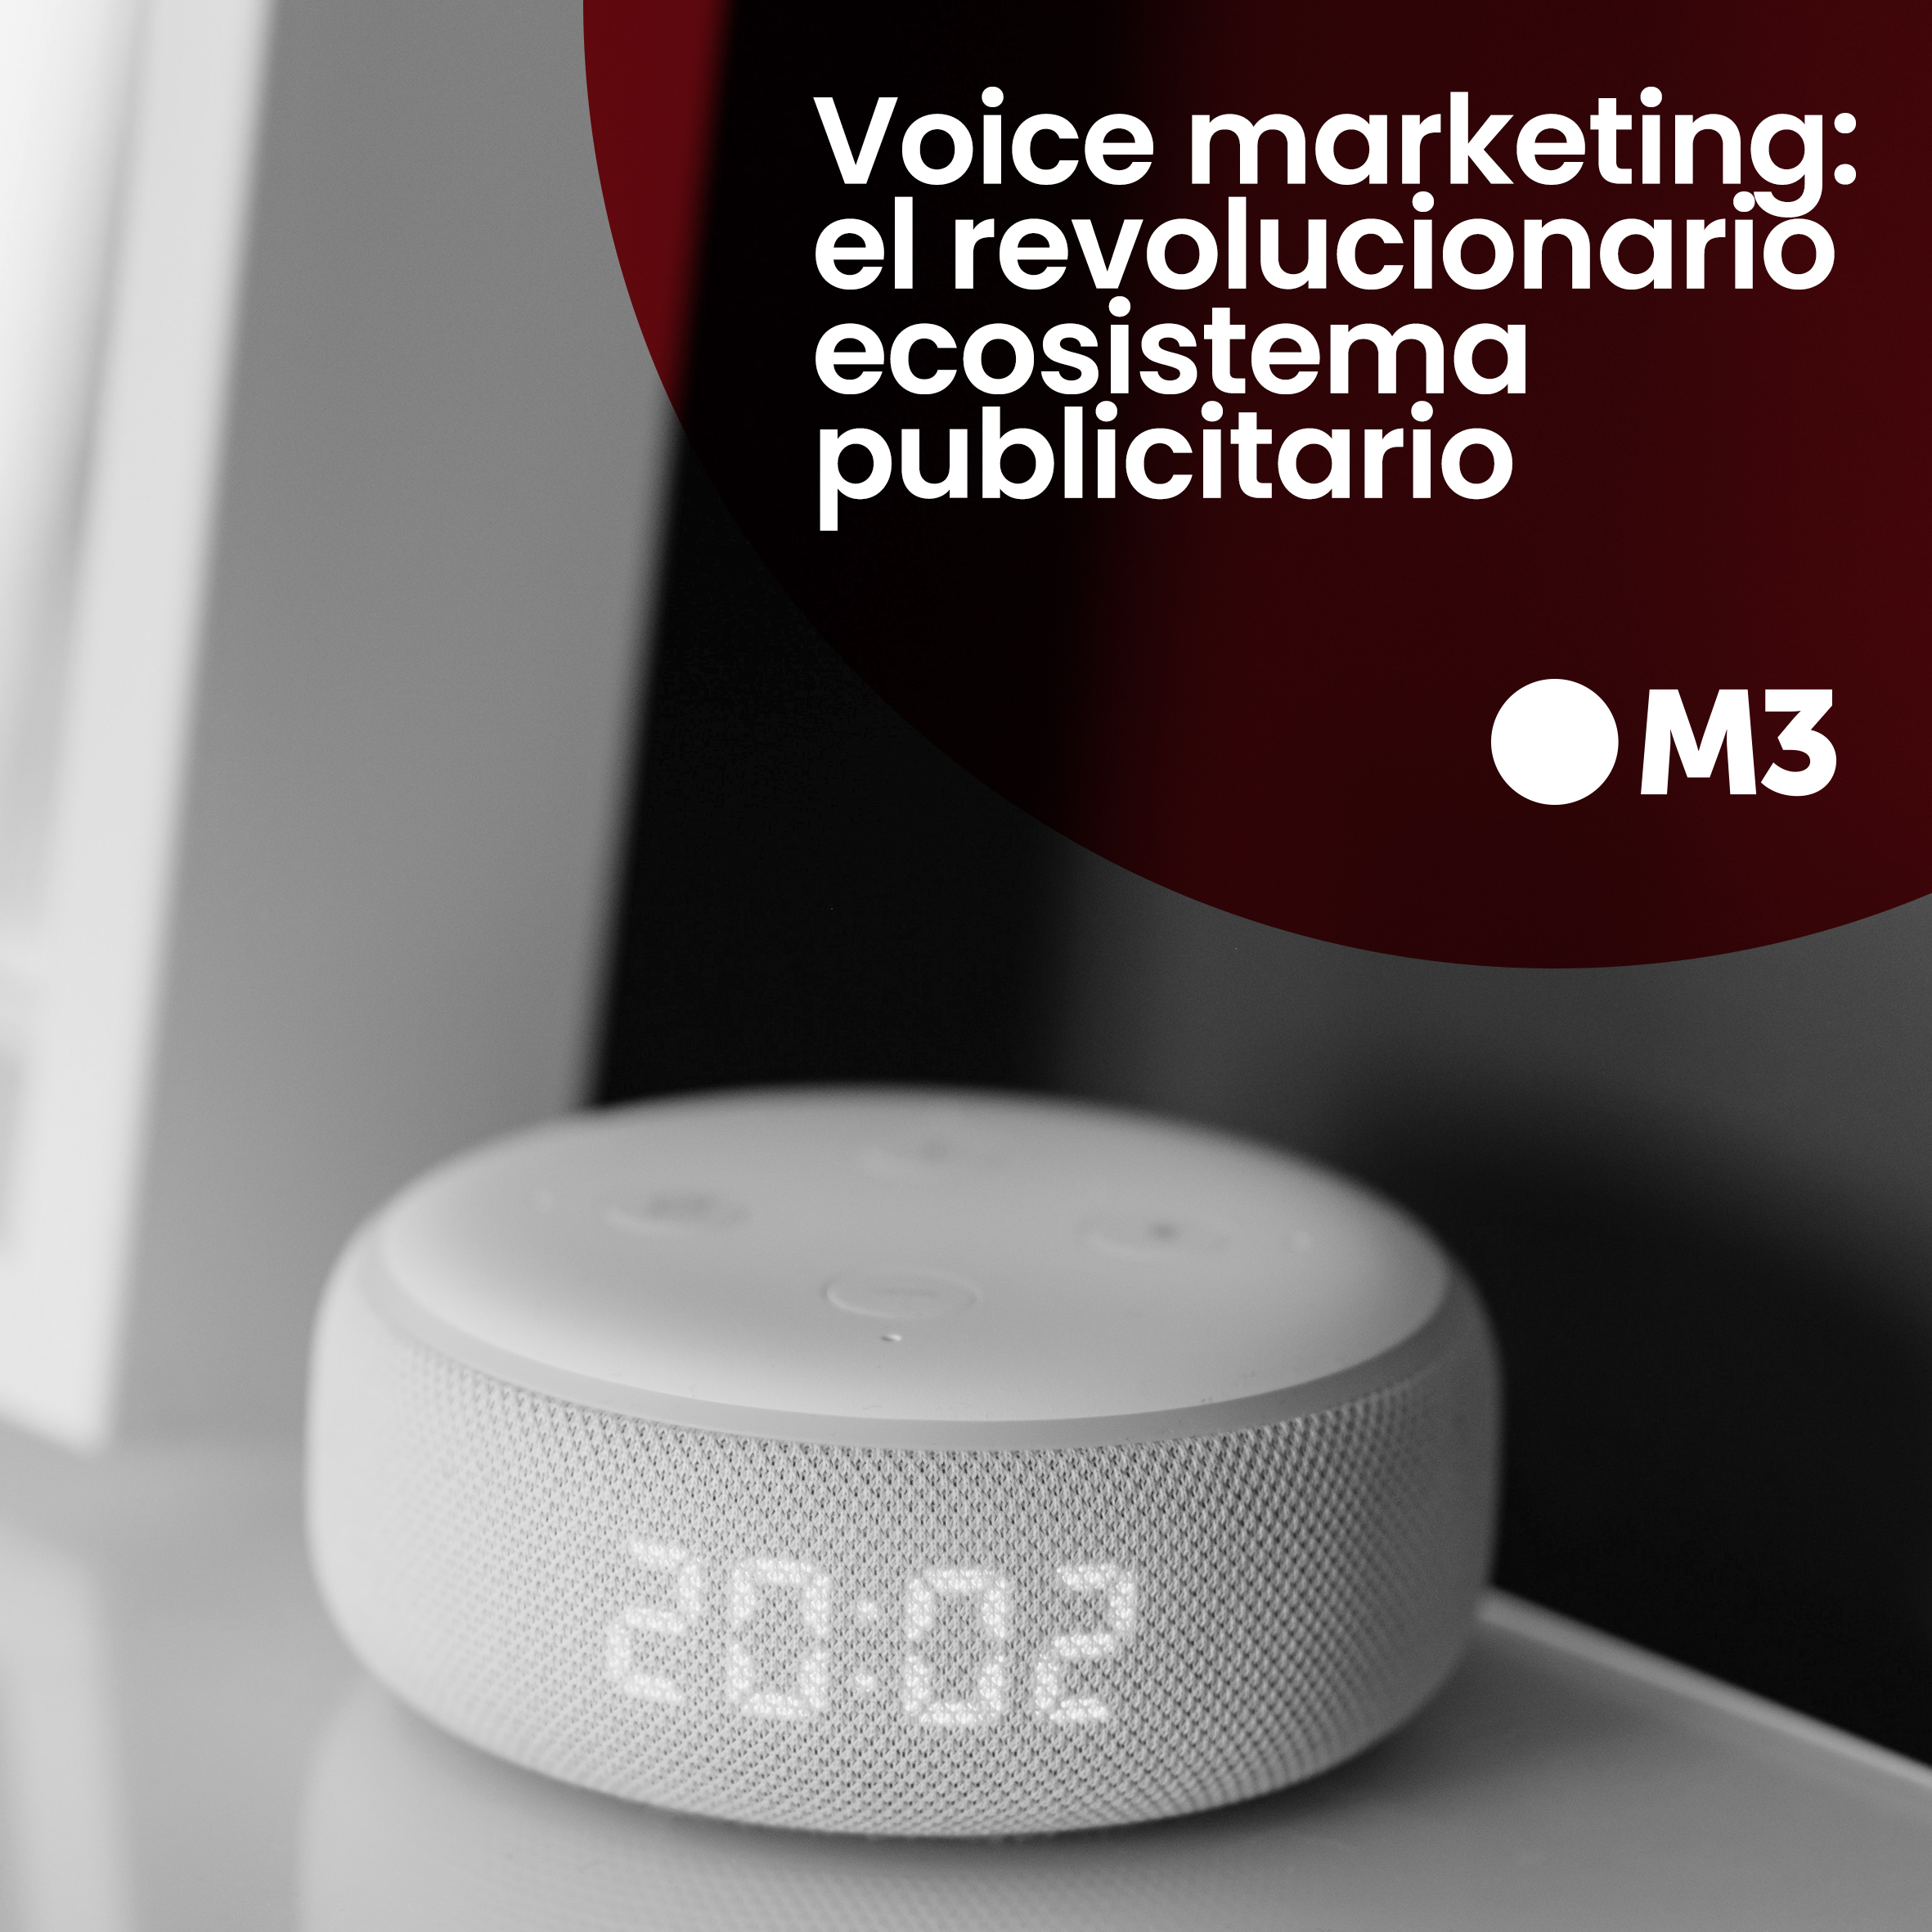 Voice marketing: el revolucionario ecosistema publicitario